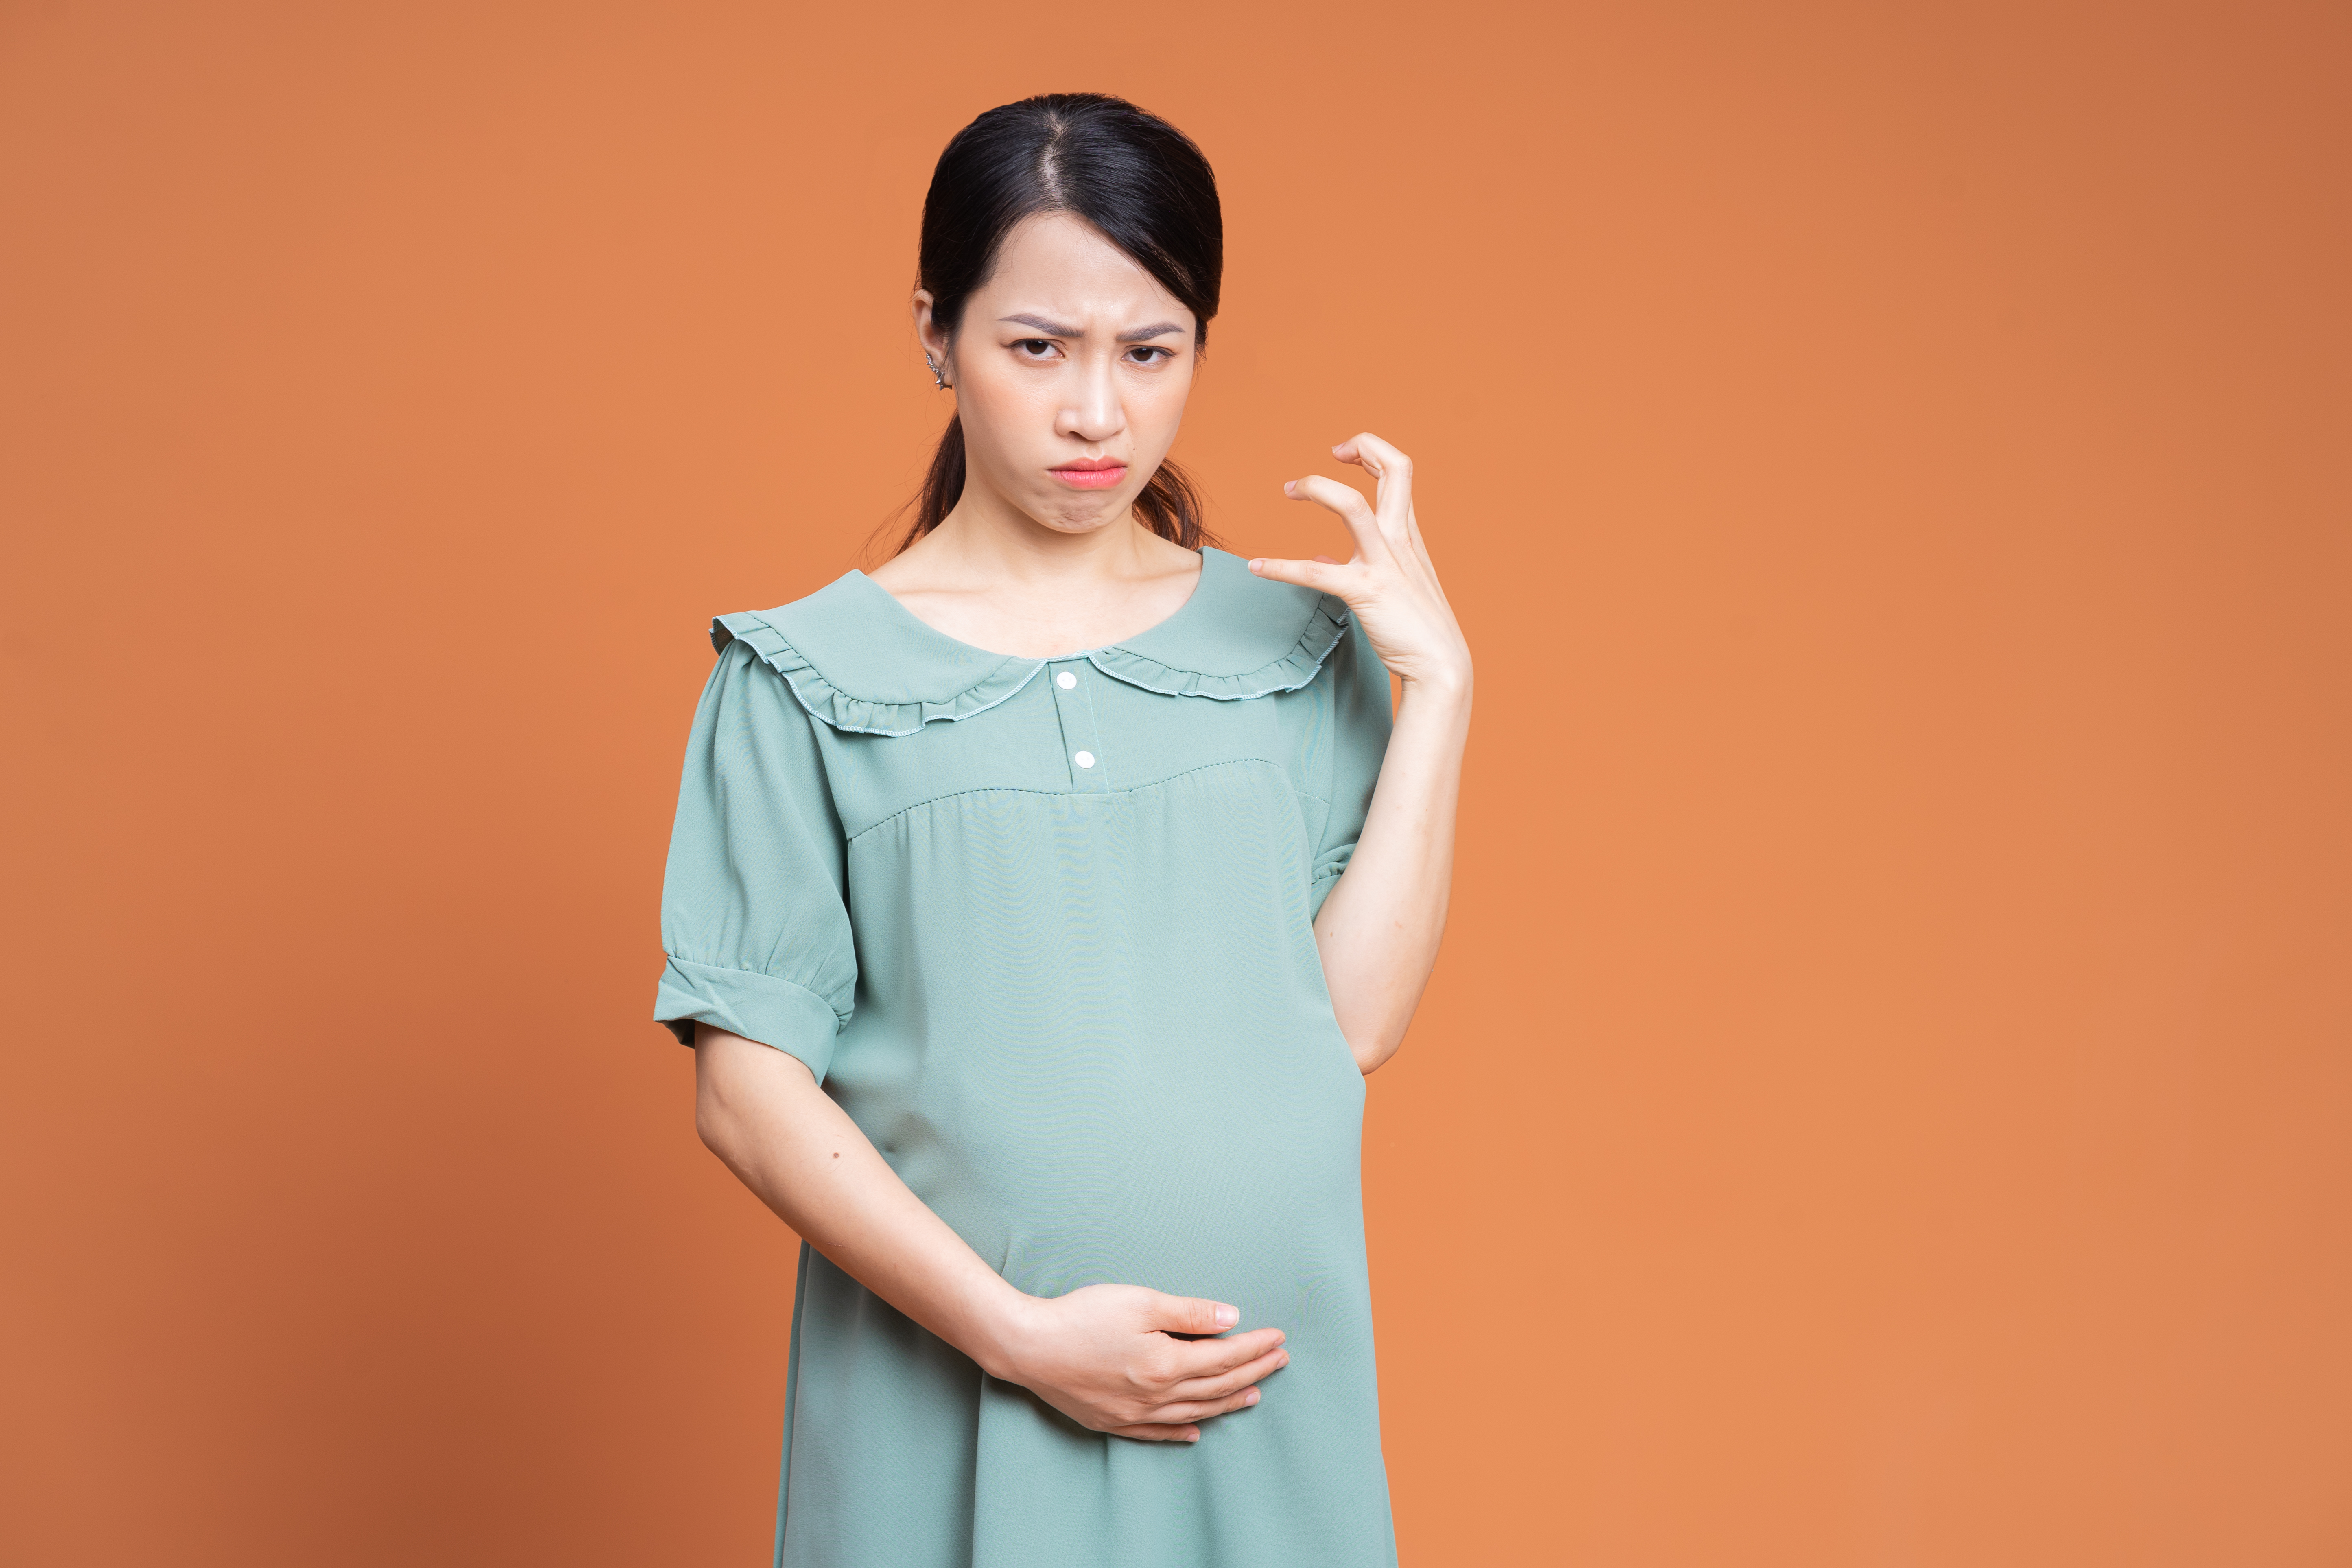 Une femme enceinte dévastée | Source : Getty Images